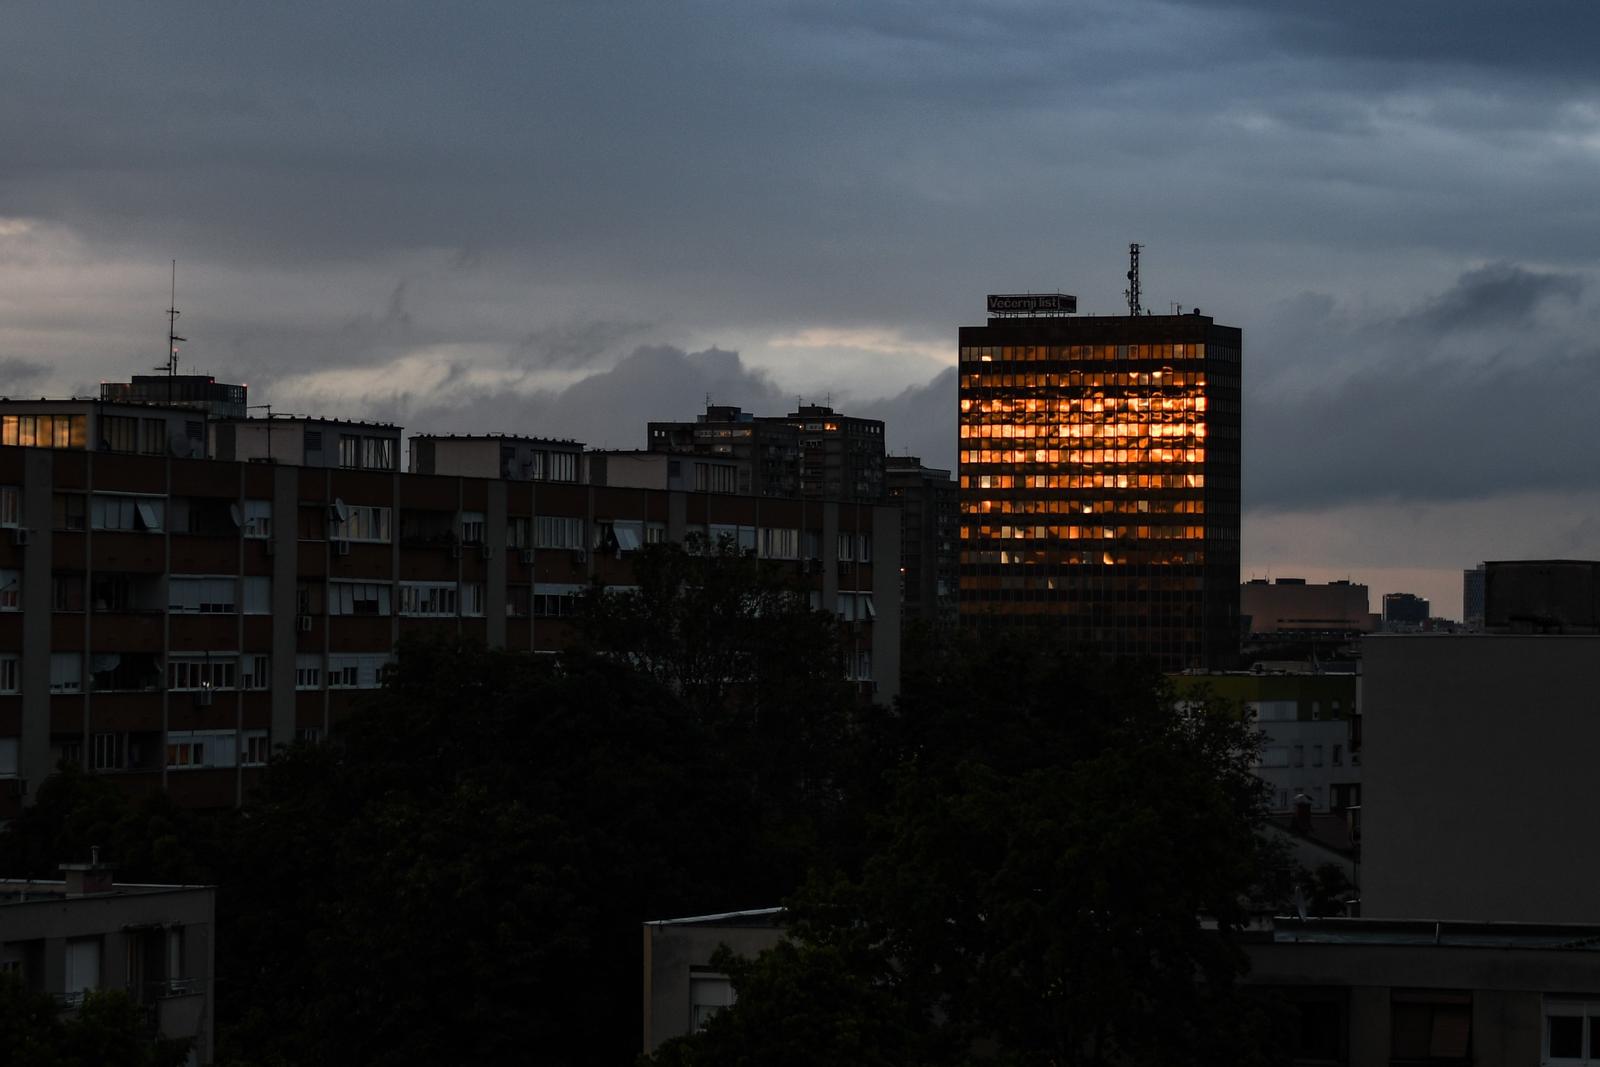 23.05.2021., Zagreb - Odraz zalazeceg sunca na prozorima Vjesnika.rrPhoto: Zoe Sarlija/PIXSELL